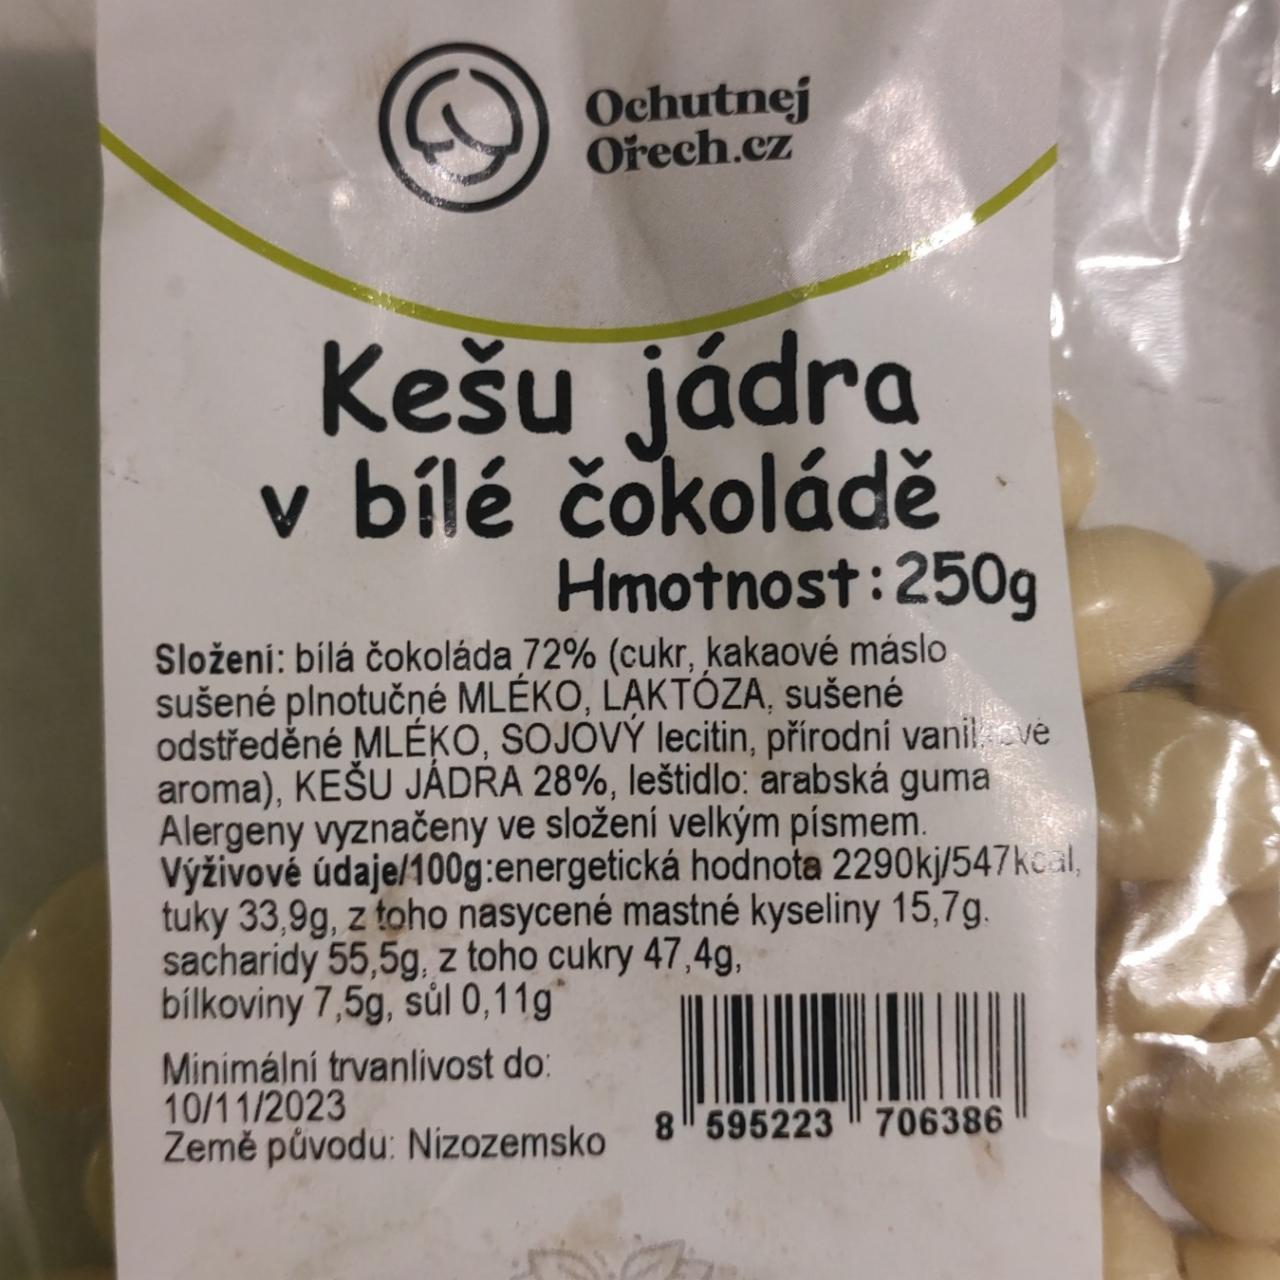 Fotografie - Kešu jádra v bílé čokoládě Ochutnejorech.cz